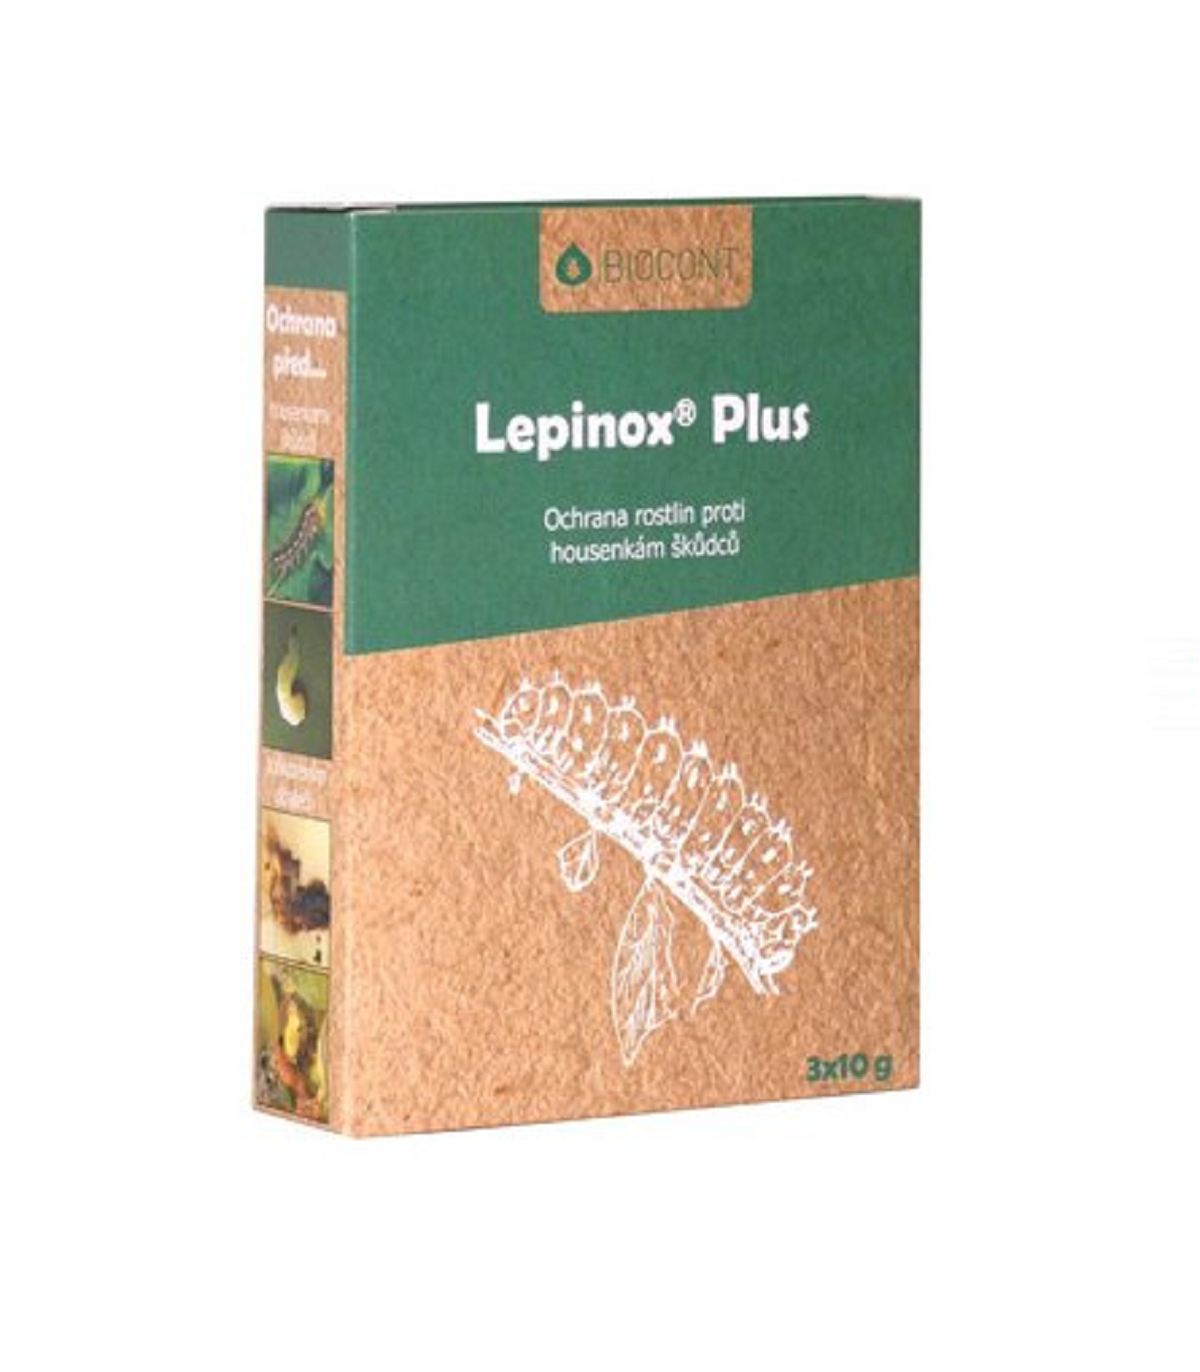 Lepinox Plus - bio prípravok proti húseniciam škodcov - Biocont - ochrana rastlín - 3 x 10 g